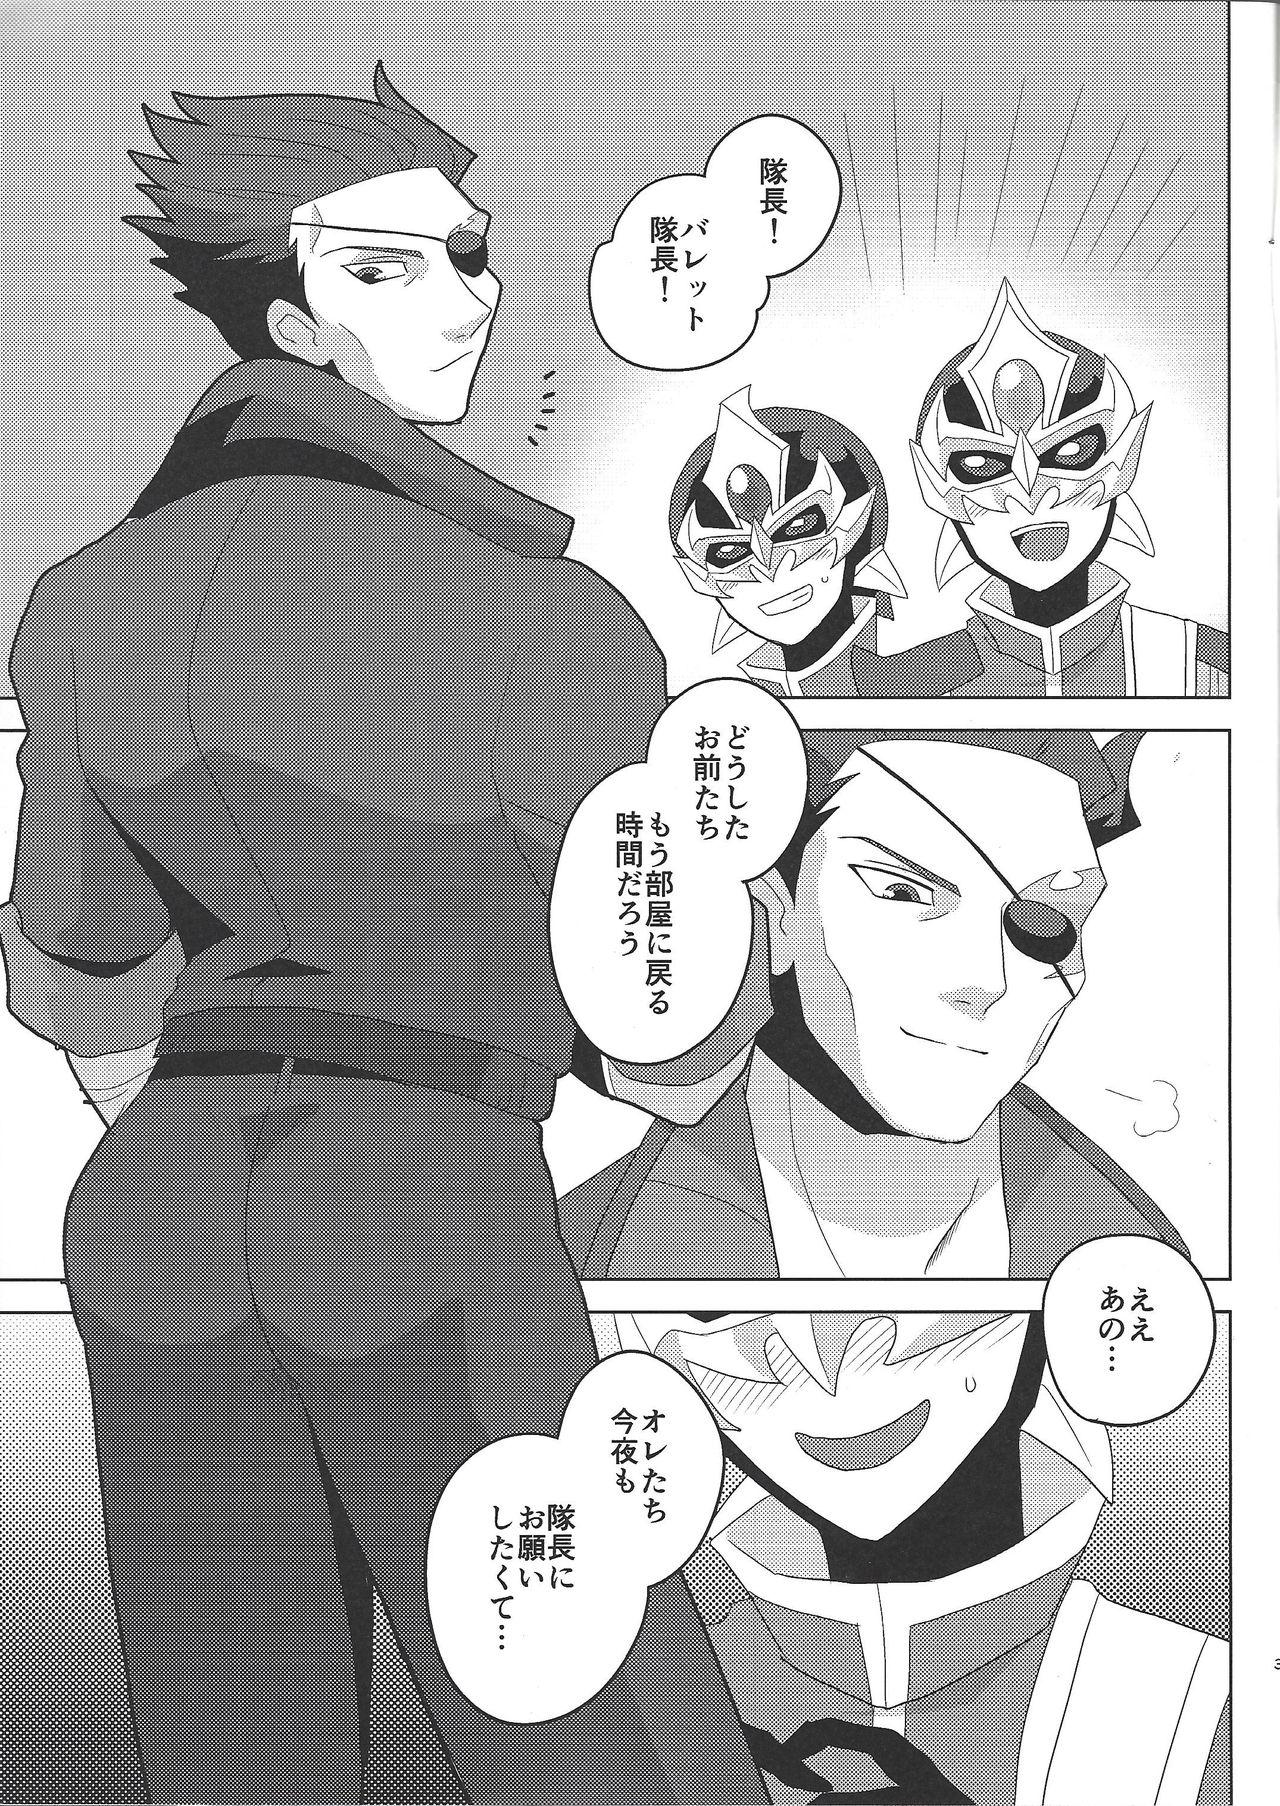 Realamateur Taichō! Kon'ya mo onegai shimasu! - Yu gi oh arc v Korea - Page 2